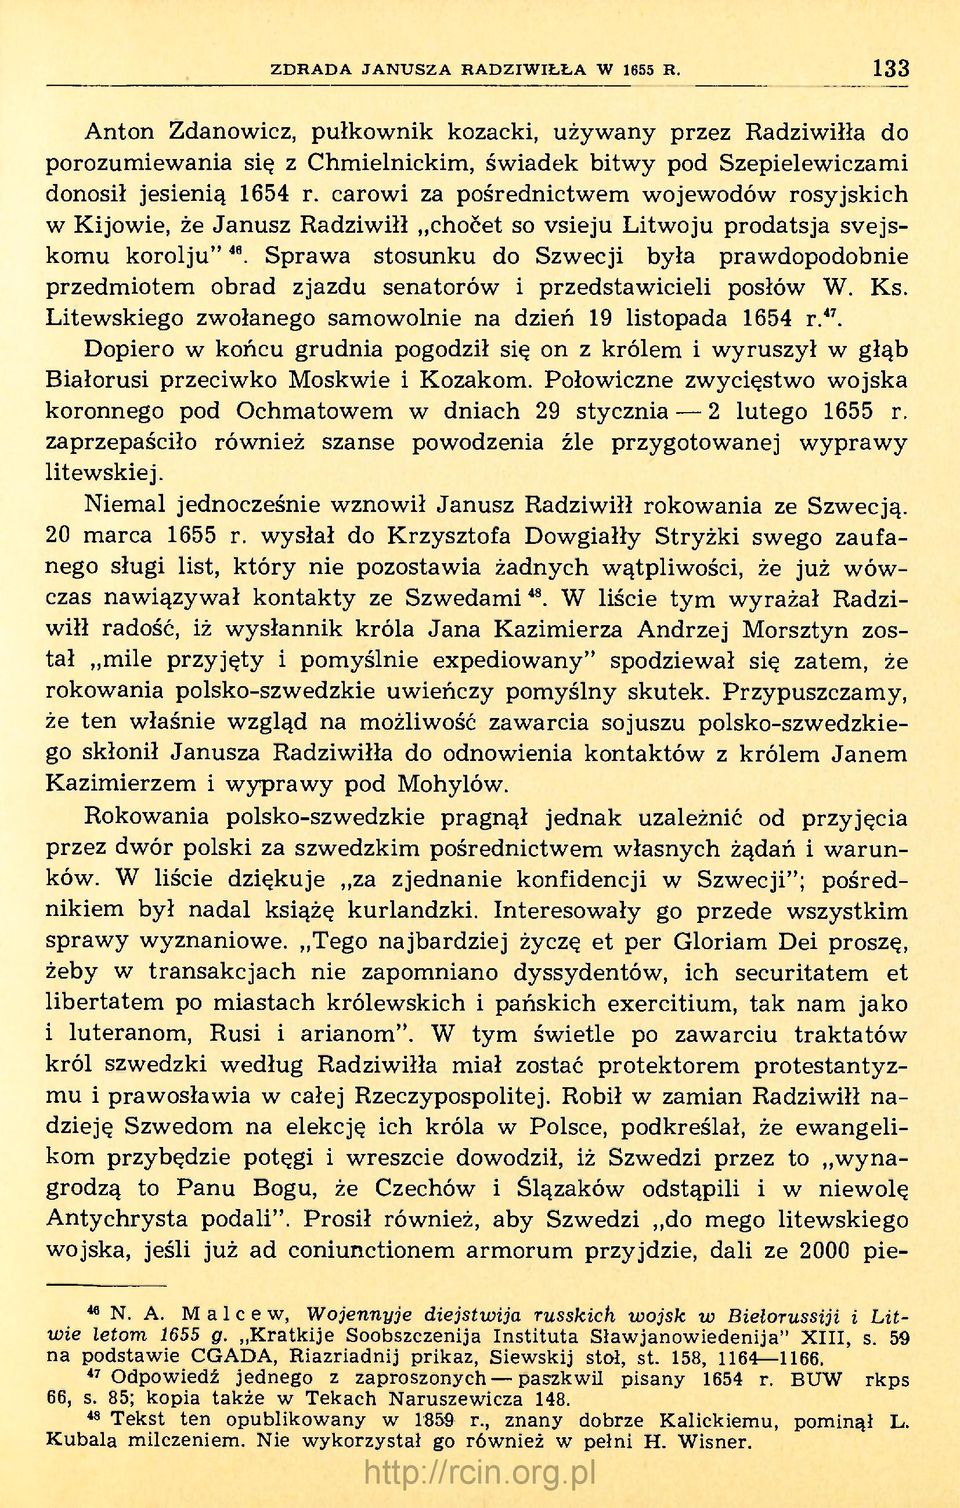 Sprawa stosunku do Szwecji była prawdopodobnie przedmiotem obrad zjazdu senatorów i przedstawicieli posłów W. Ks. Litewskiego zwołanego samowolnie na dzień 19 listopada 1654 r. 47.